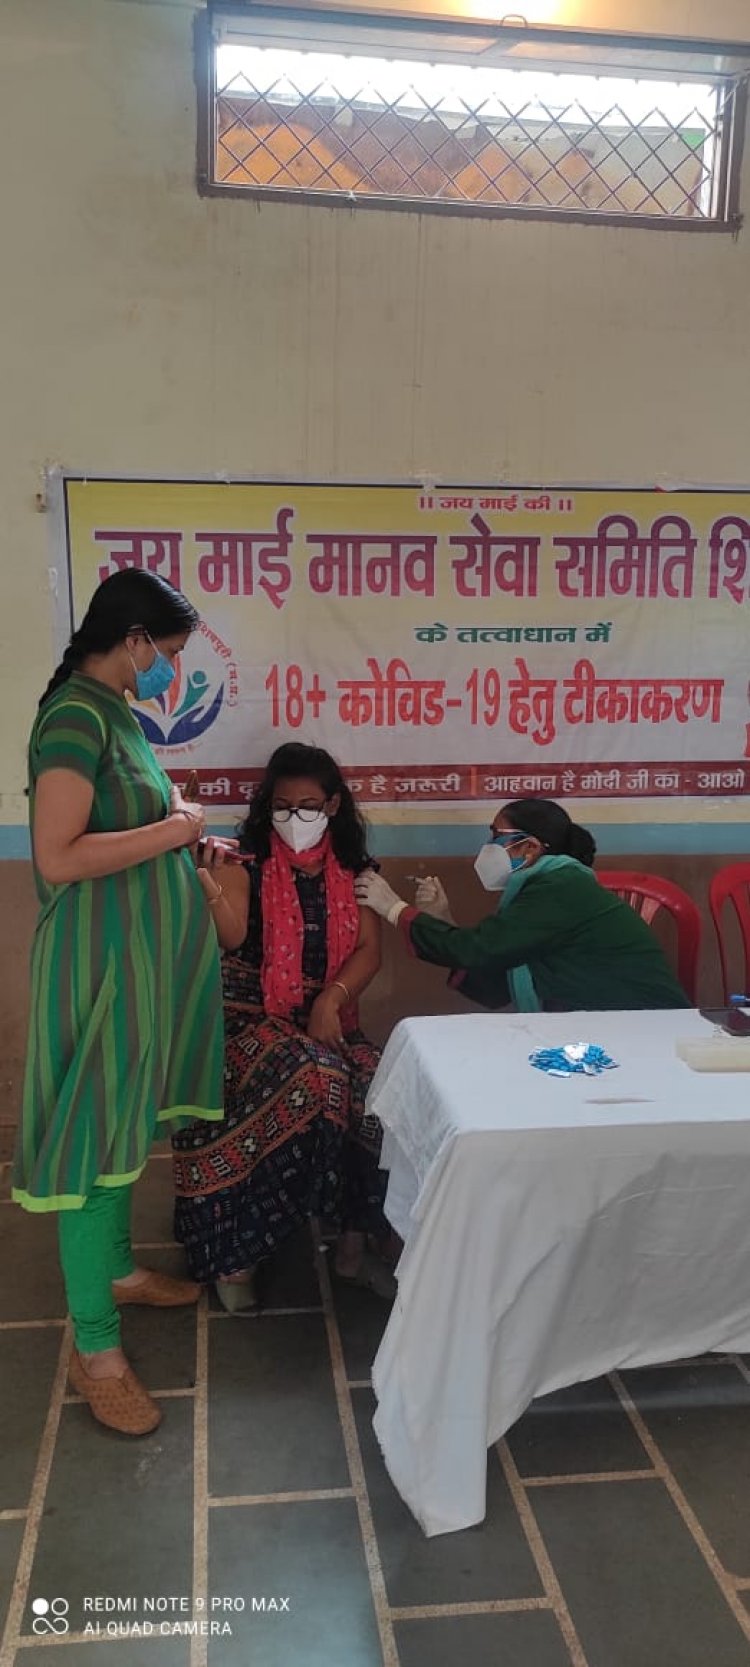 जय माई मानव सेवा समिति शिवपुरी के द्वारा  तृतीय कॉरोना वैक्सीनेशन शिविर का आयोजन